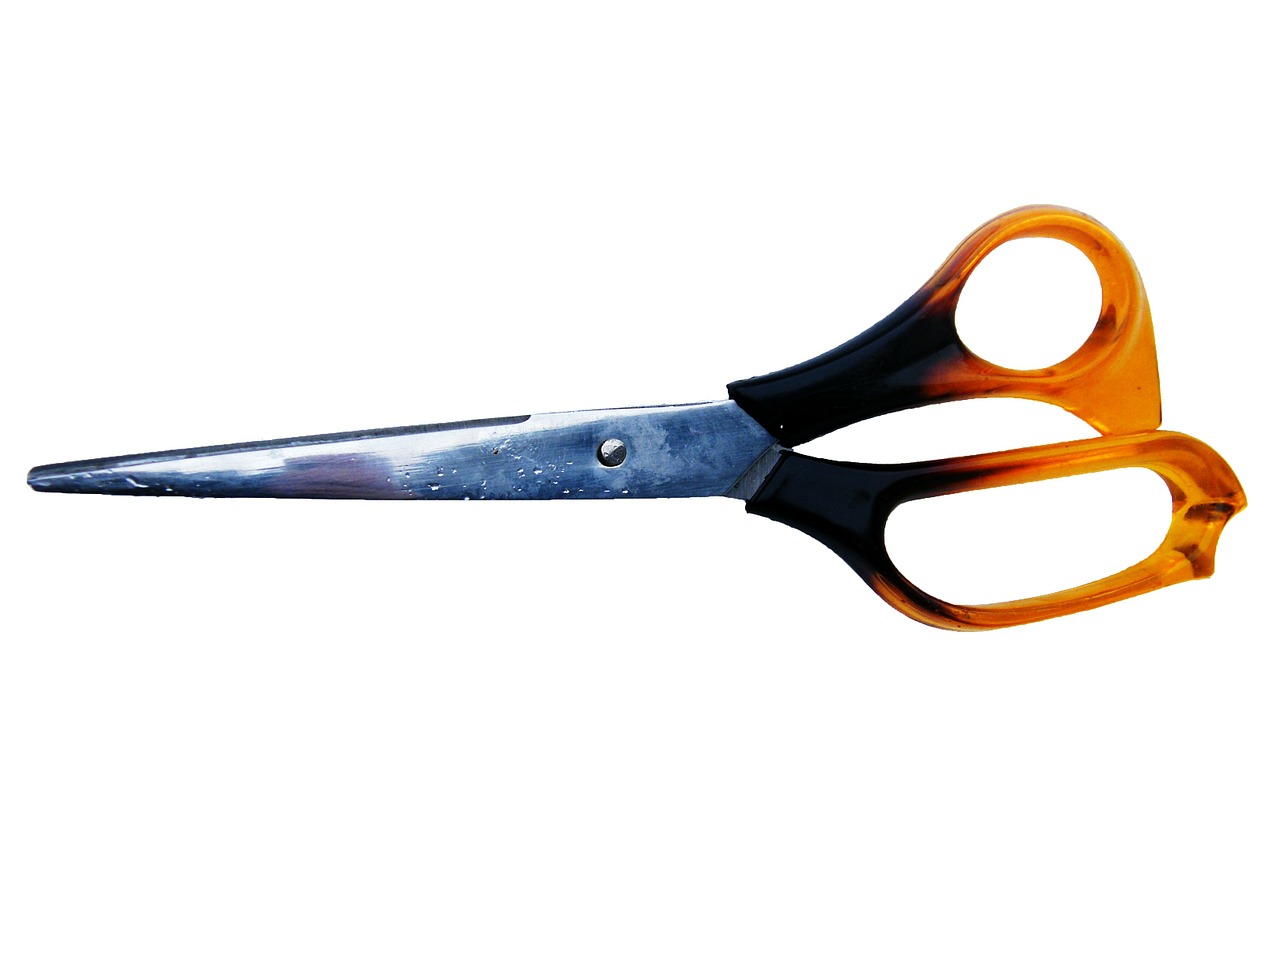 paper scissors scissors craft scissors free photo